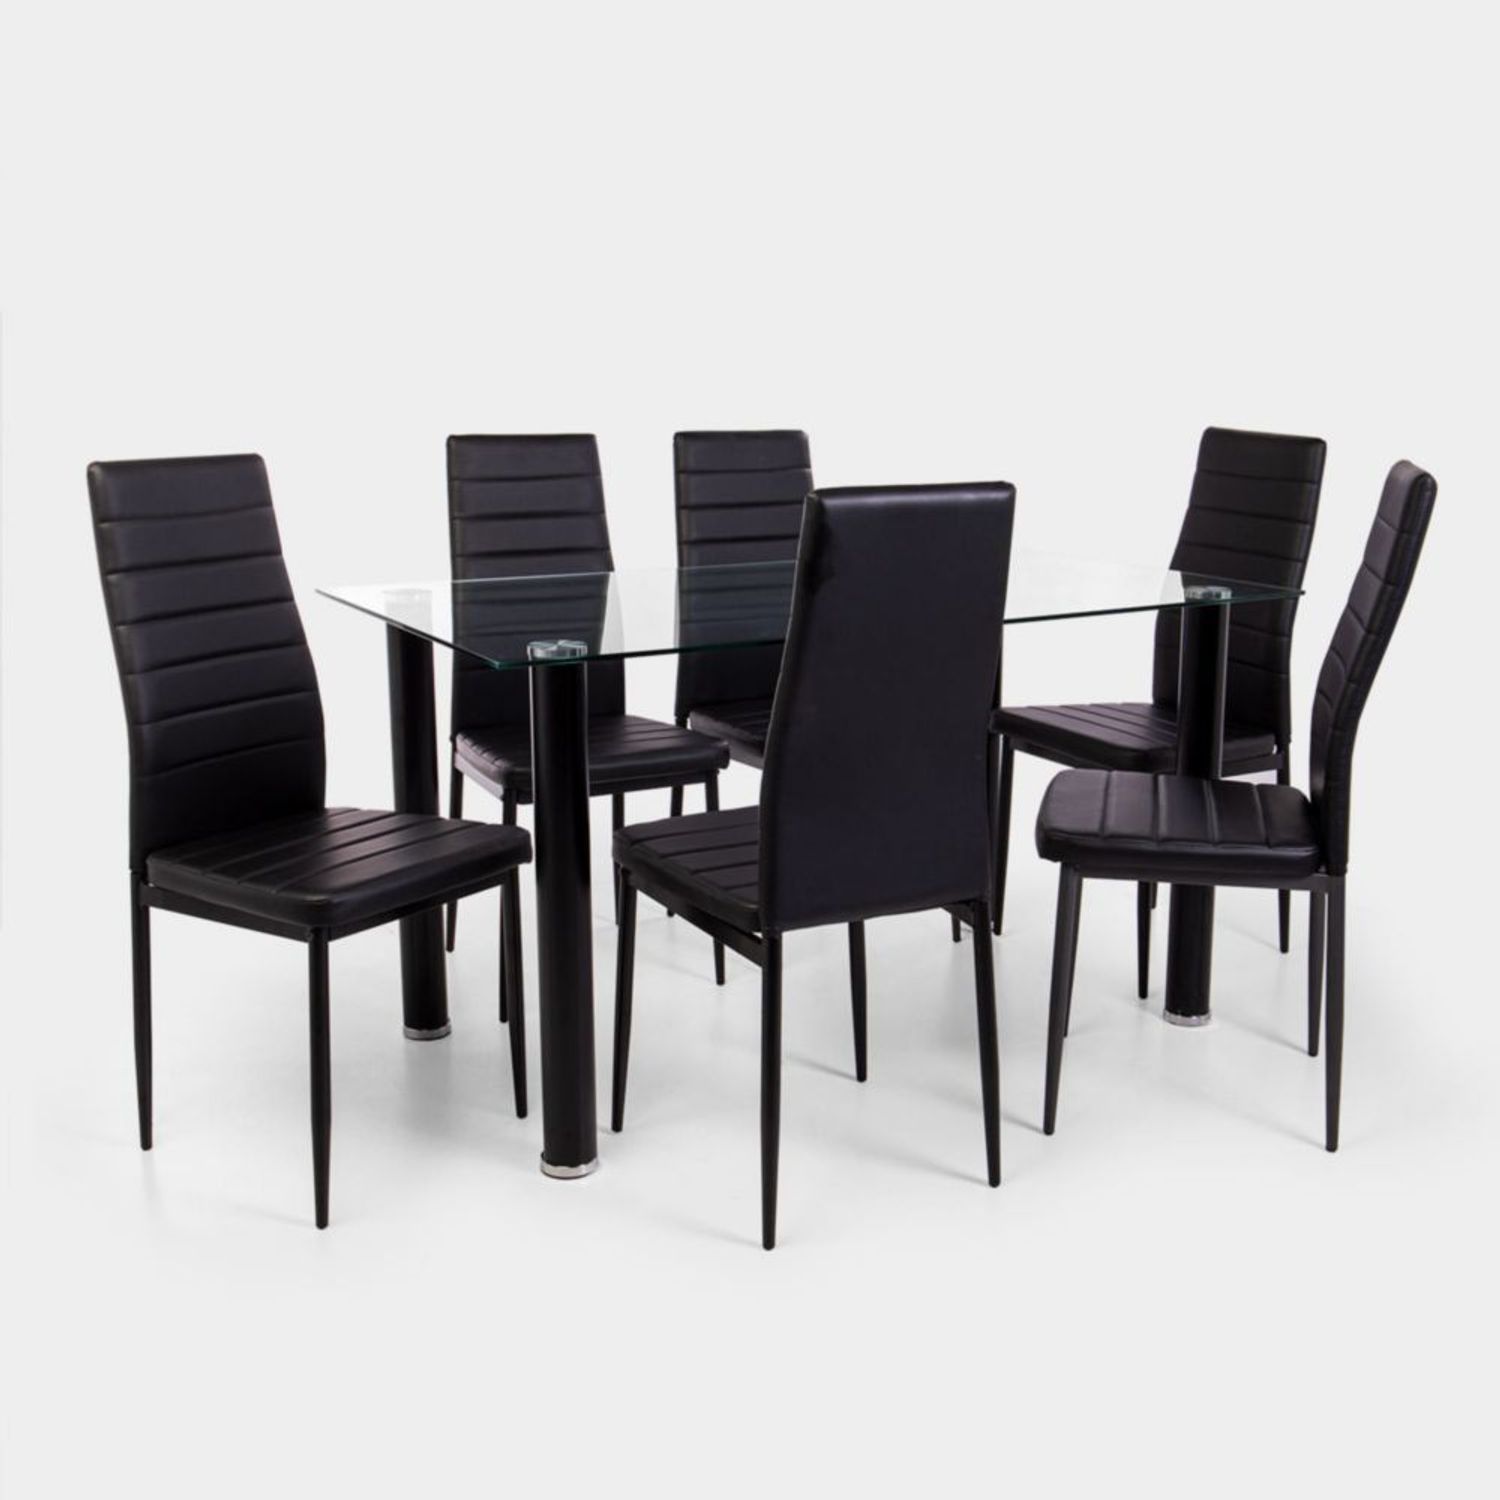 Mueblería Meza - 🖤Elegante comedor 6 sillas color negro🖤 🖤Mesa con patas  cromadas y vidrio negro. 🖤Sillas negras con pata cromada. 📲6864231657.